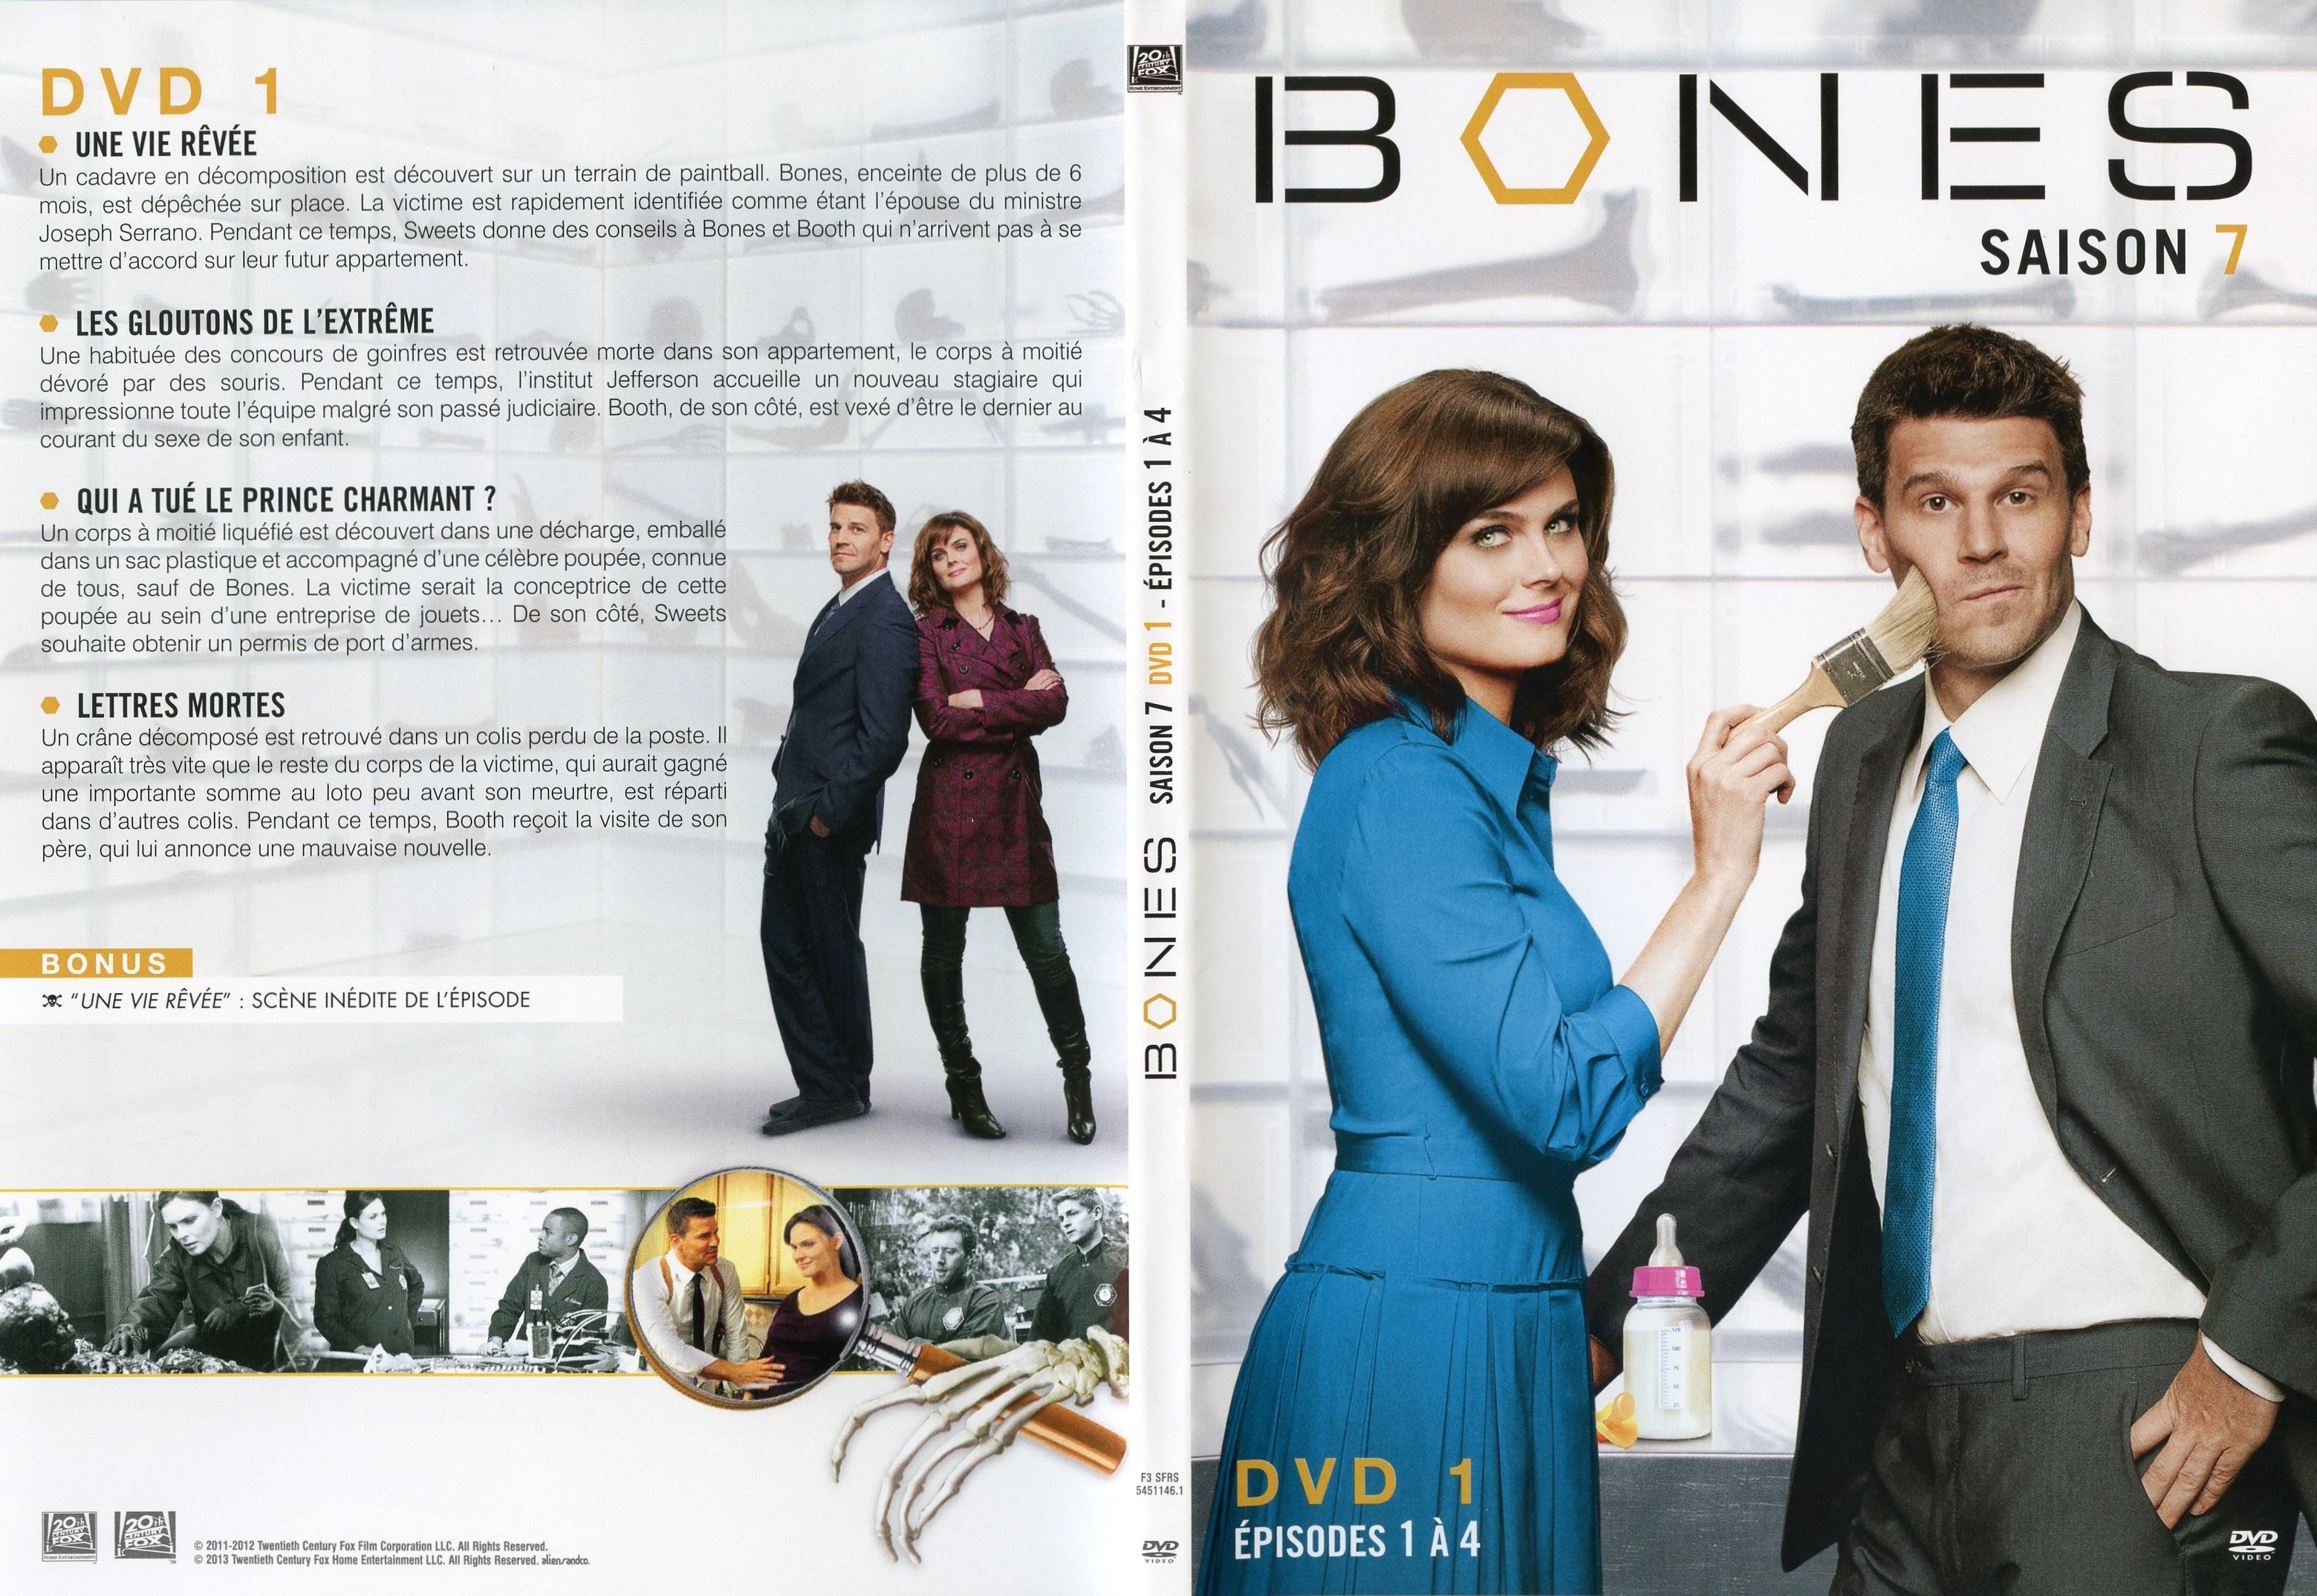 Jaquette DVD Bones Saison 7 DVD 1